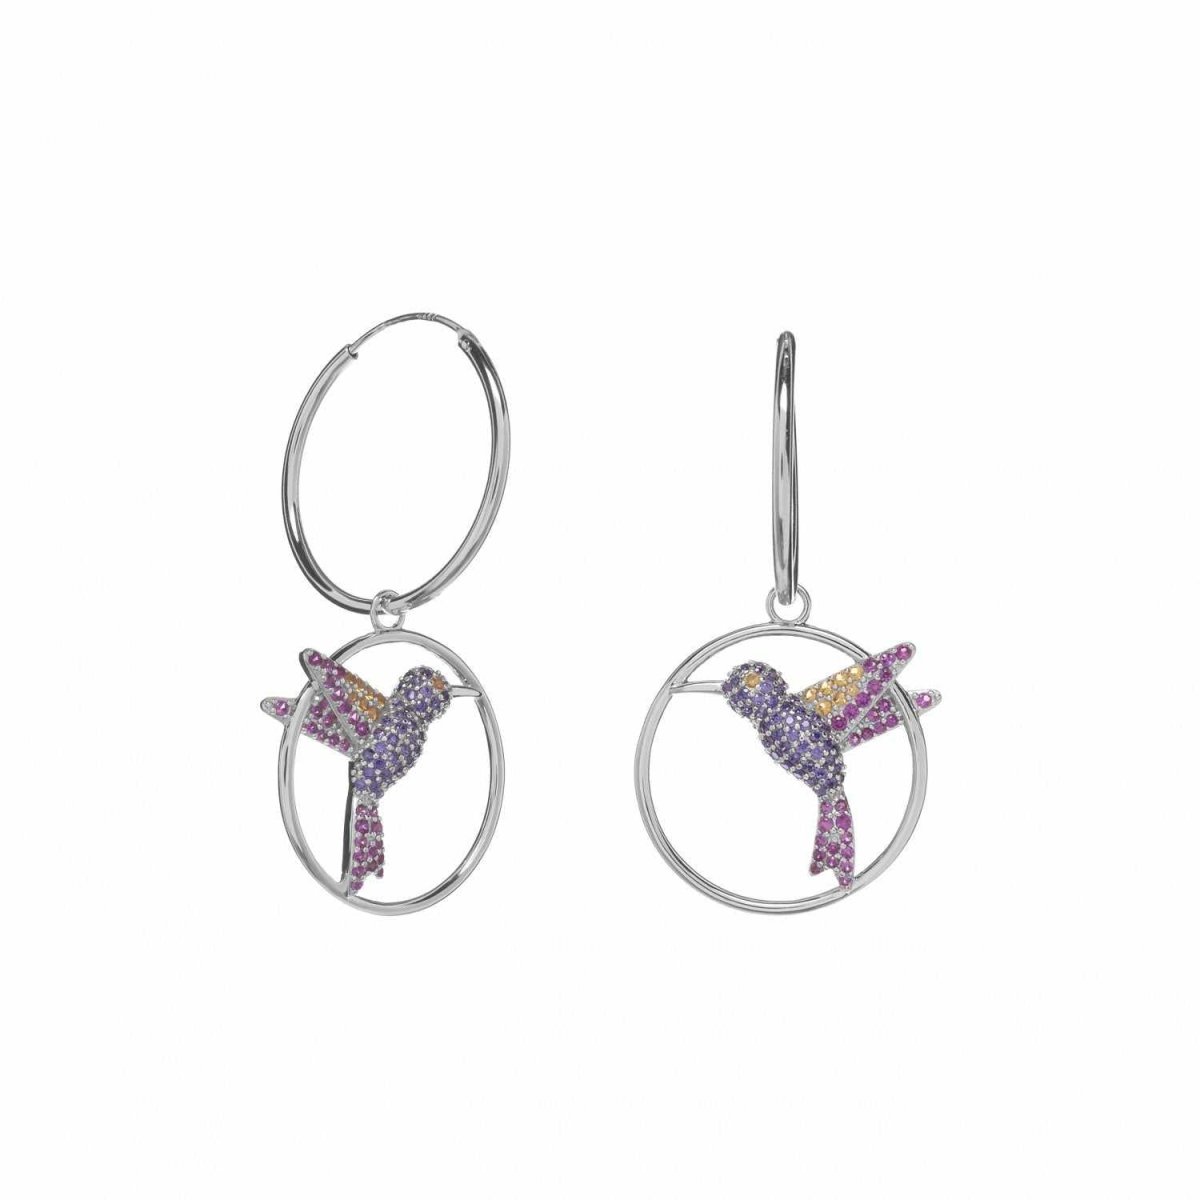 Earrings - Hoop earrings with dangling earrings with hummingbird ring design